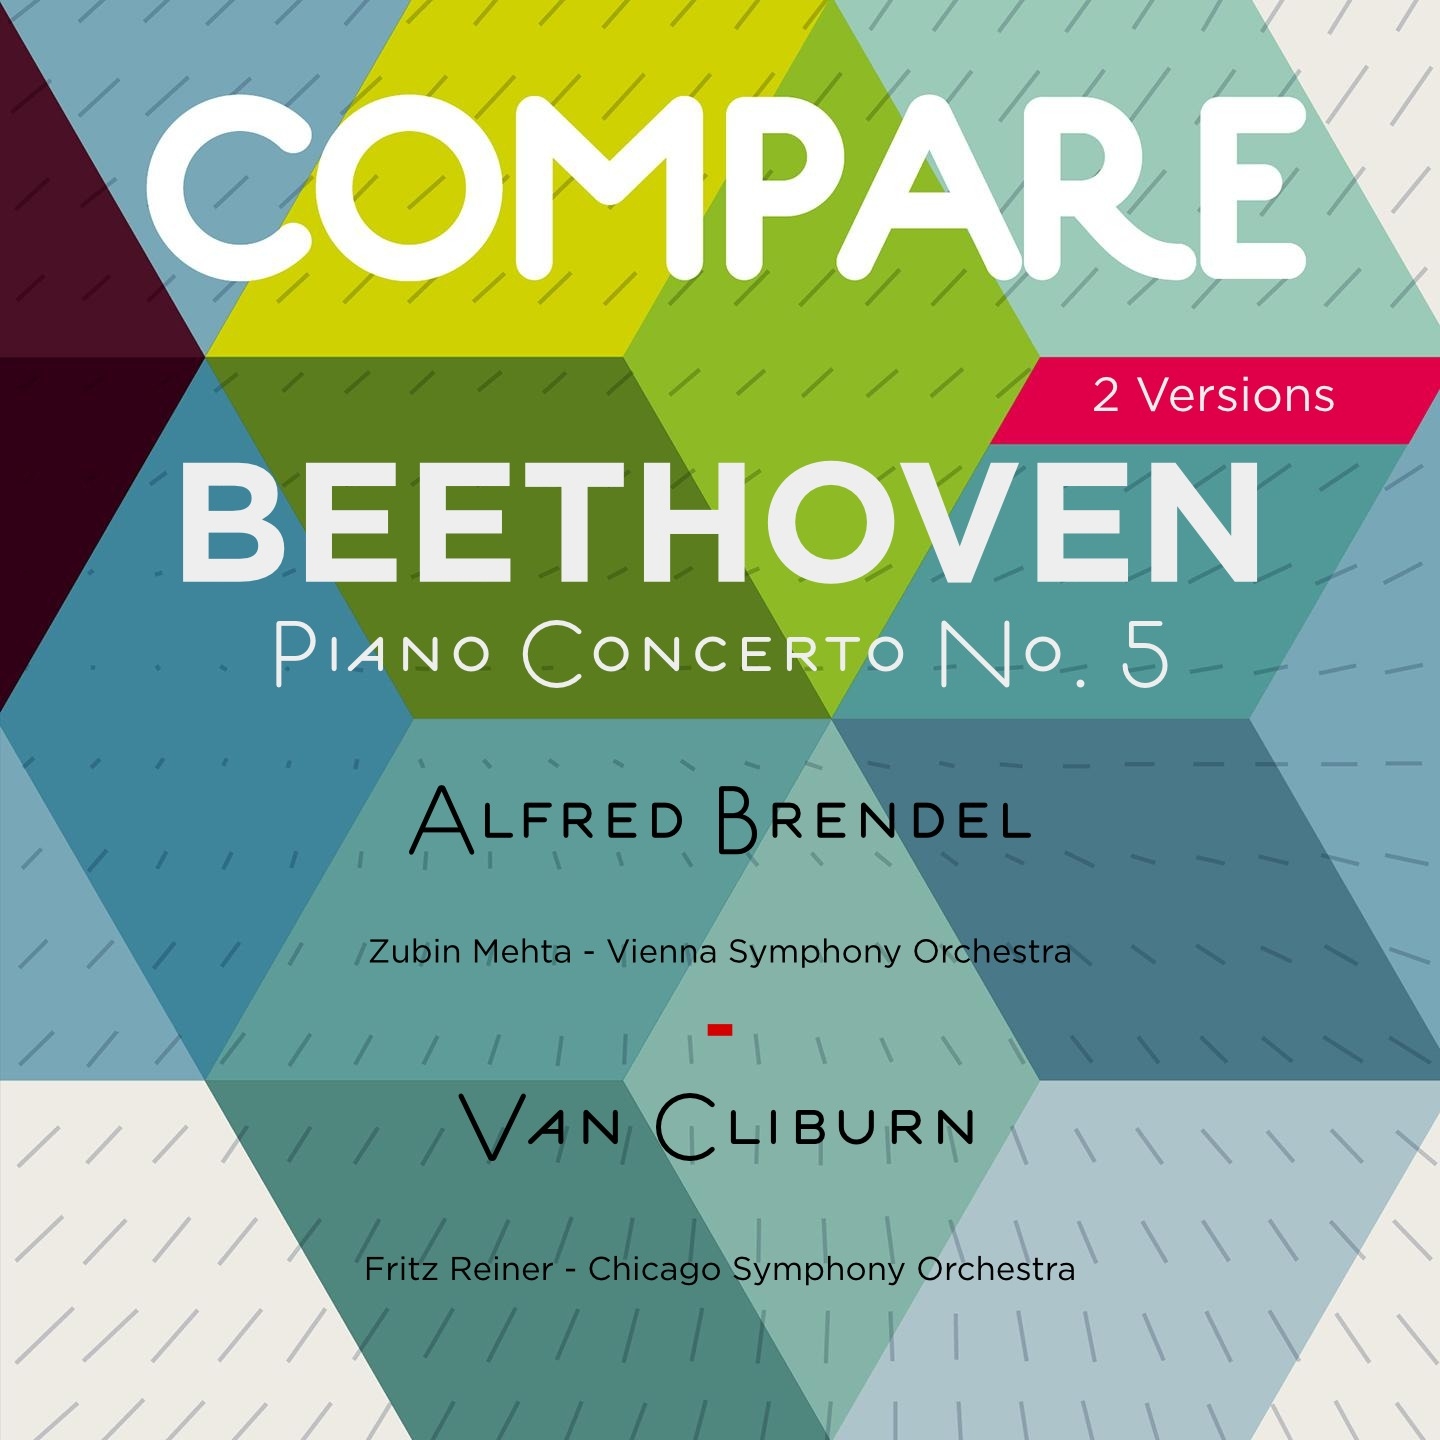 Piano Concerto No. 5 in E-Flat Major, Op. 73 "Emperor": I. Allegro